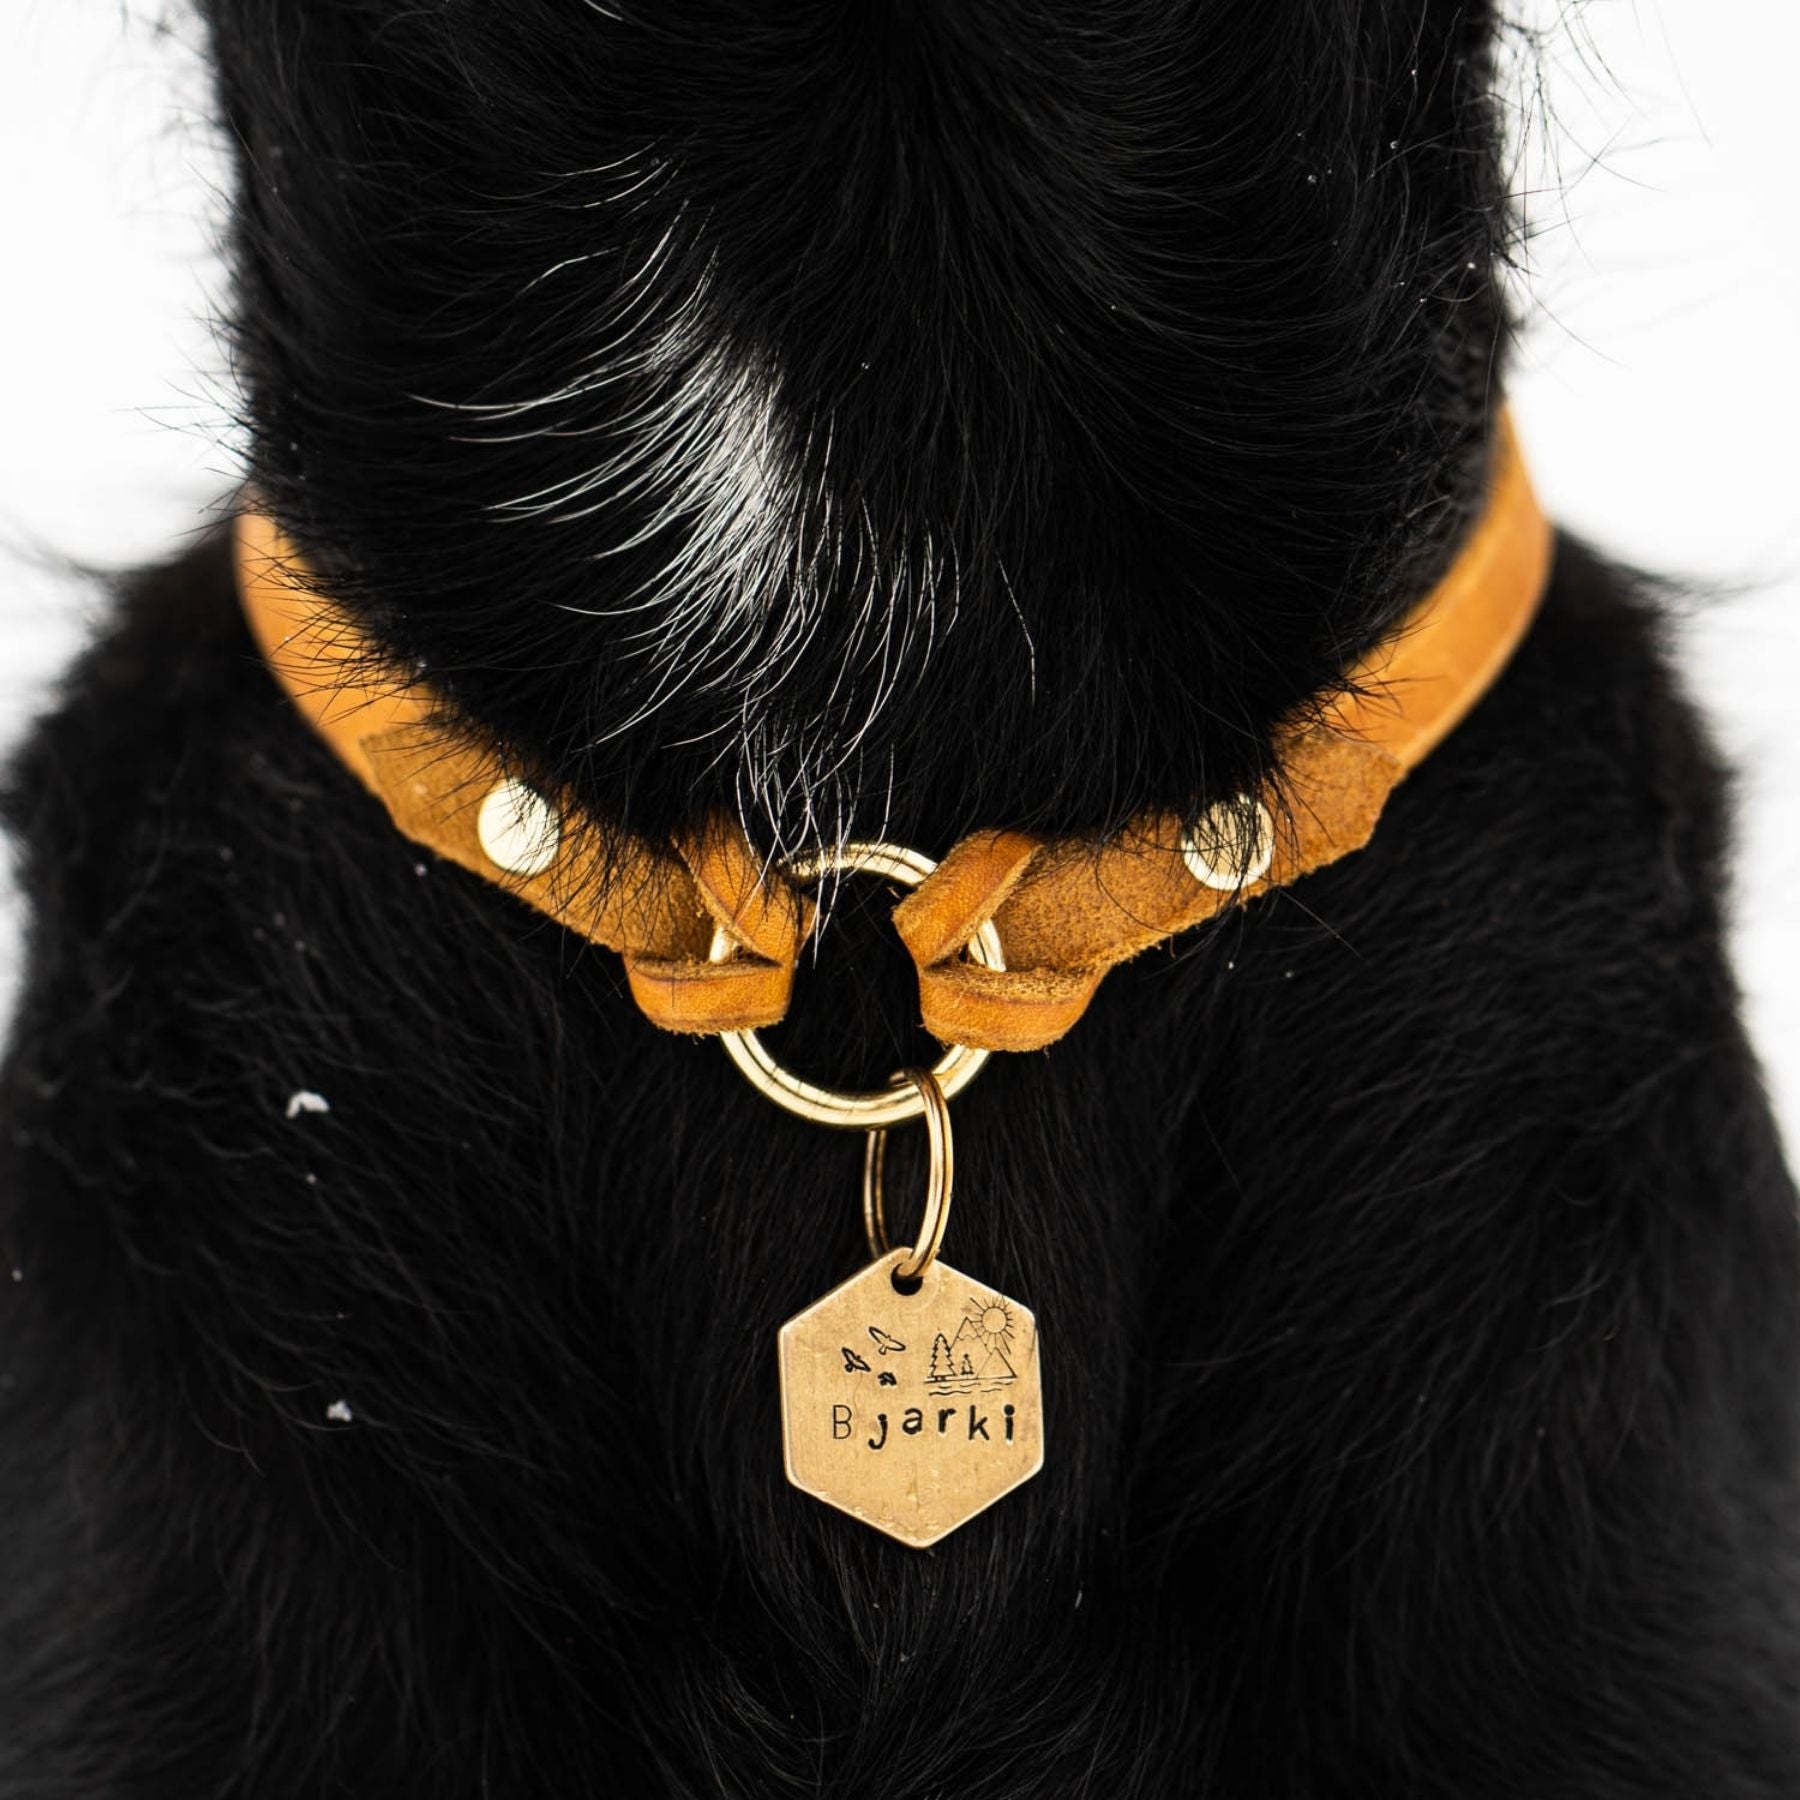 Markenhalsband für Hundemarken, dünnes Halsband für Hundemarken mit Handynummer und Namen, Ledermarkenhalsband, handgefertigt in Wien, Hundezubehör aus Österreich.